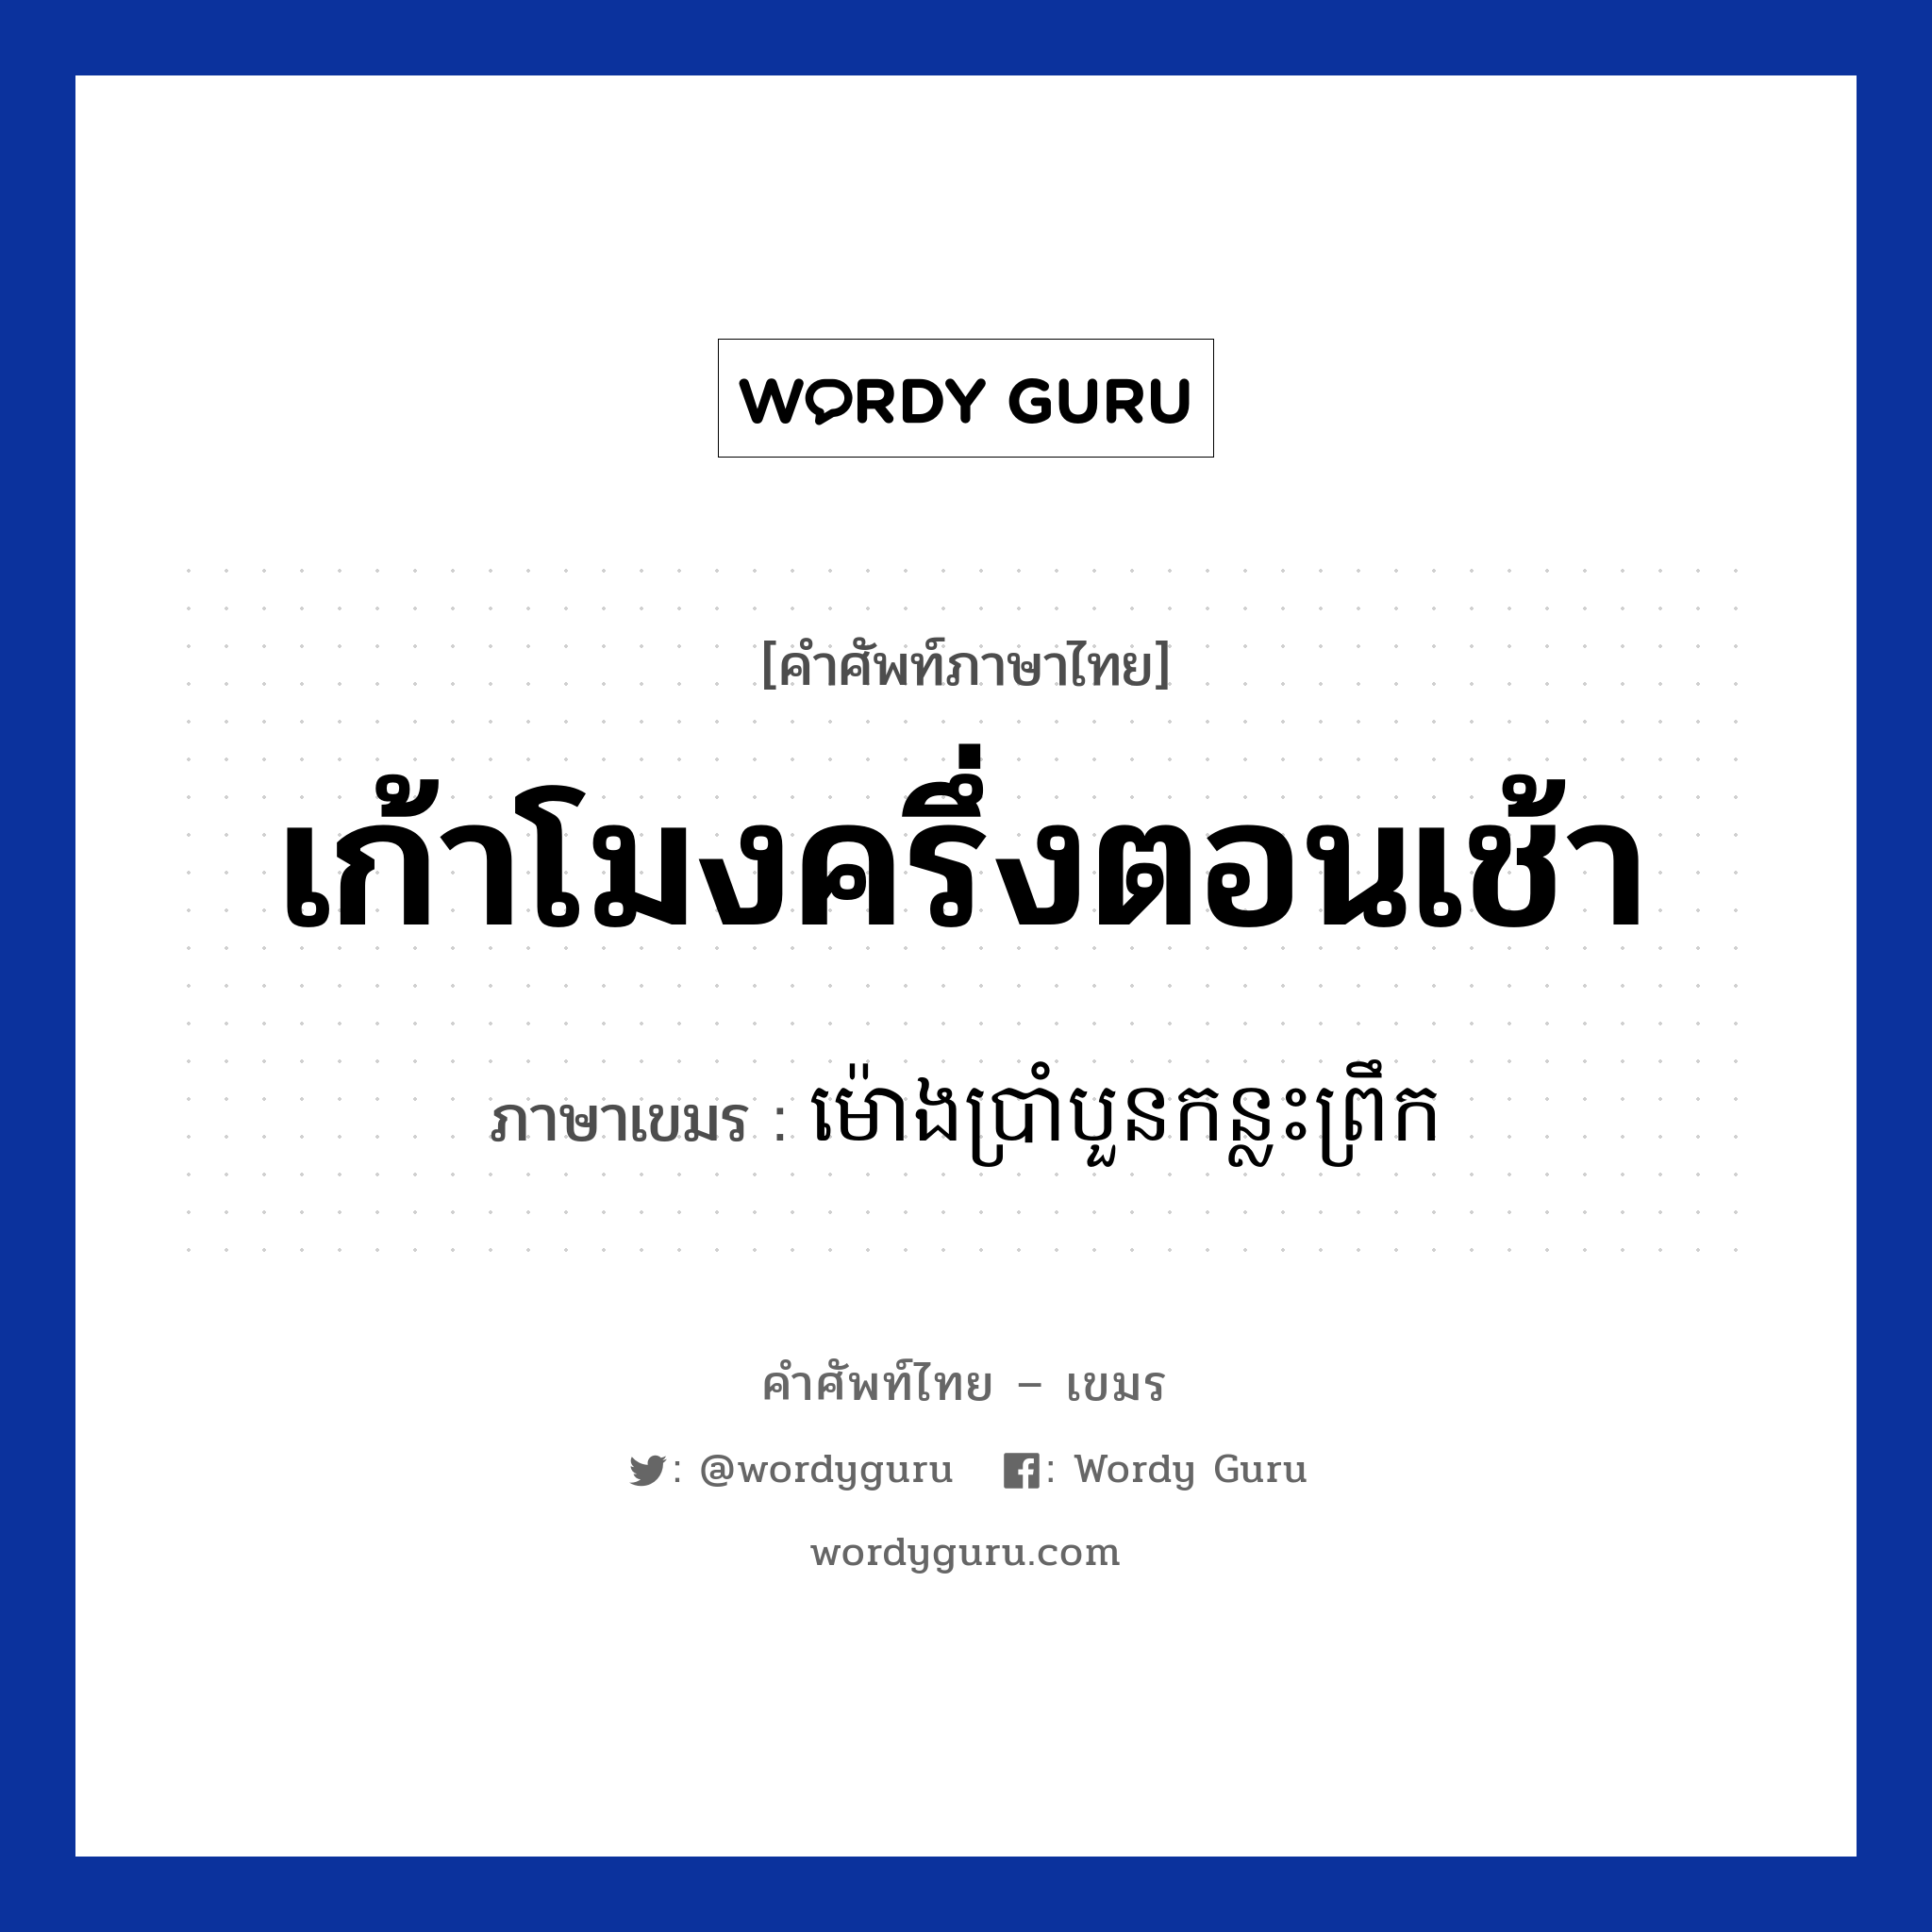 เก้าโมงครึ่งตอนเช้า ภาษาเขมรคืออะไร, คำศัพท์ภาษาไทย - เขมร เก้าโมงครึ่งตอนเช้า ภาษาเขมร ម៉ោងប្រាំបួនកន្លះព្រឹក หมวด บทสนทนาเกี่ยวกับวัน เวลา Mong pramboun konlas preok หมวด บทสนทนาเกี่ยวกับวัน เวลา